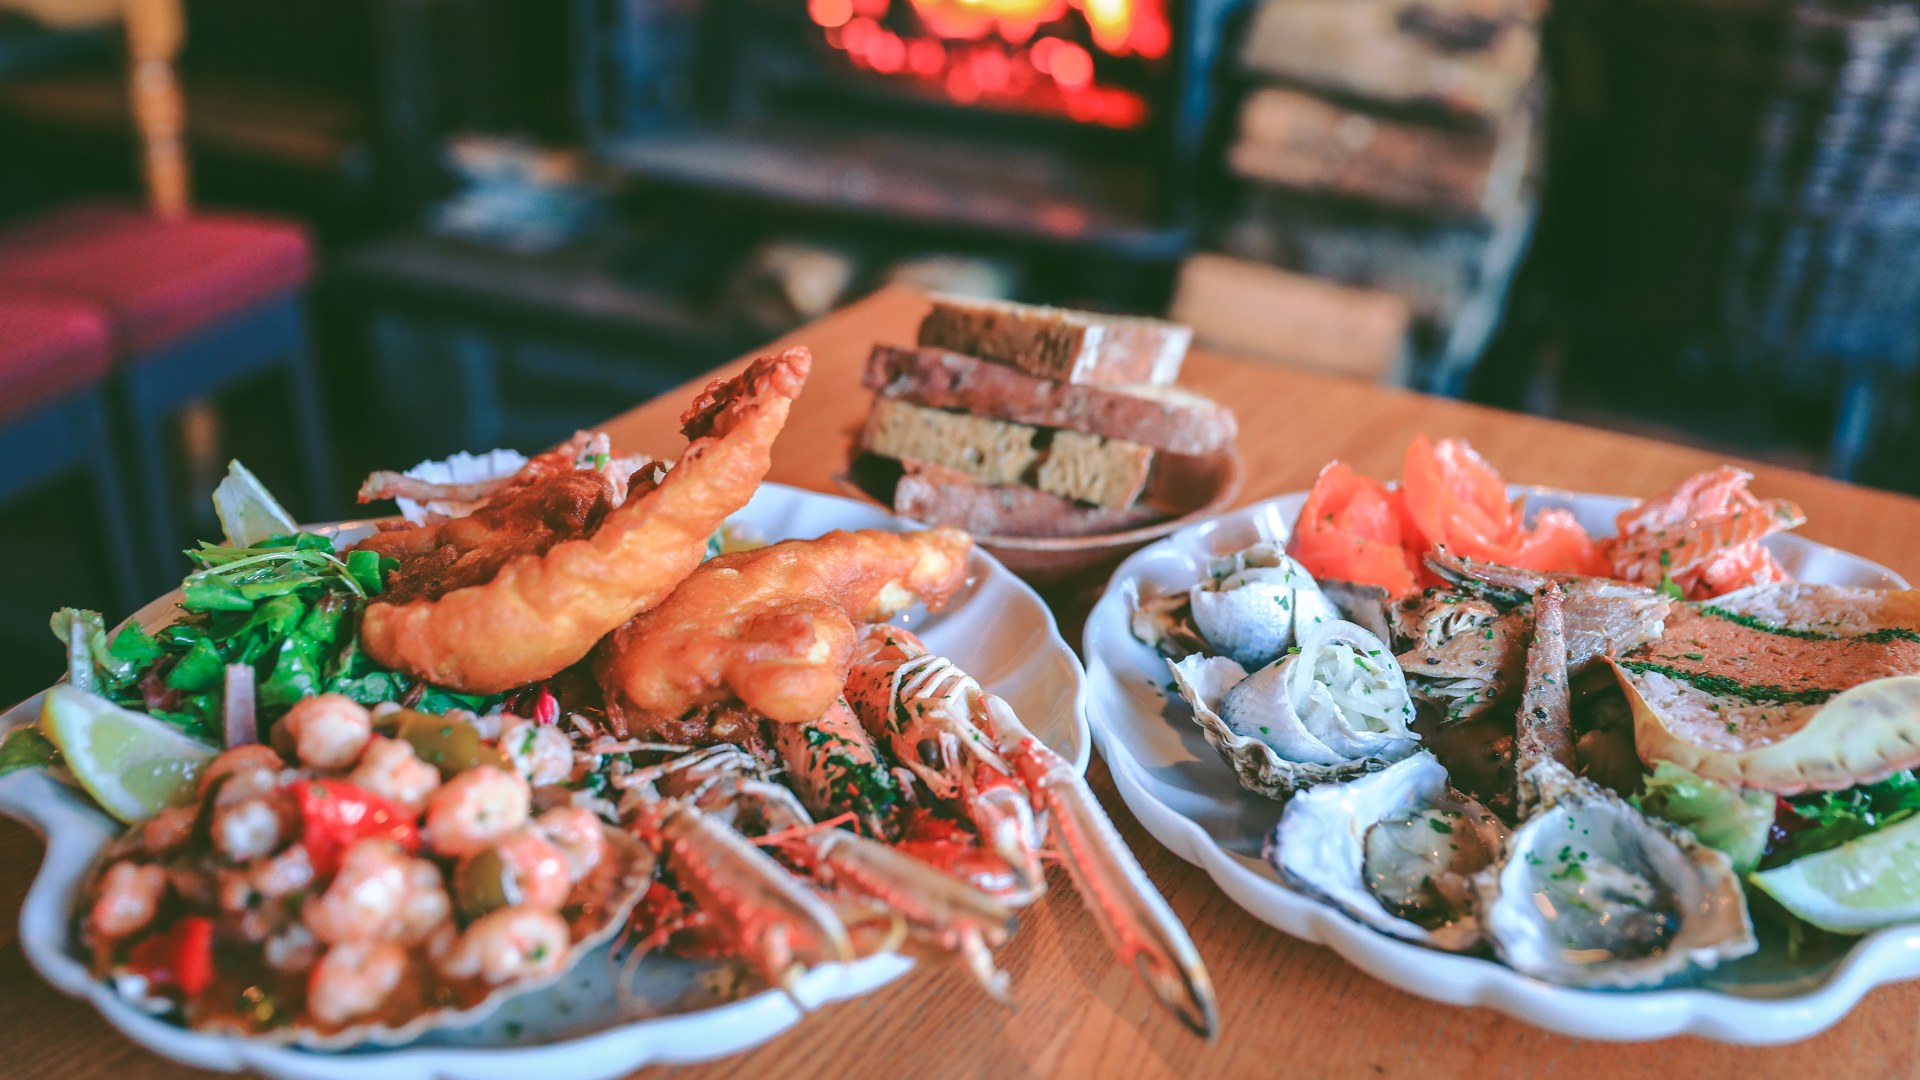 Seafood platter at Applecross Inn, Scotland